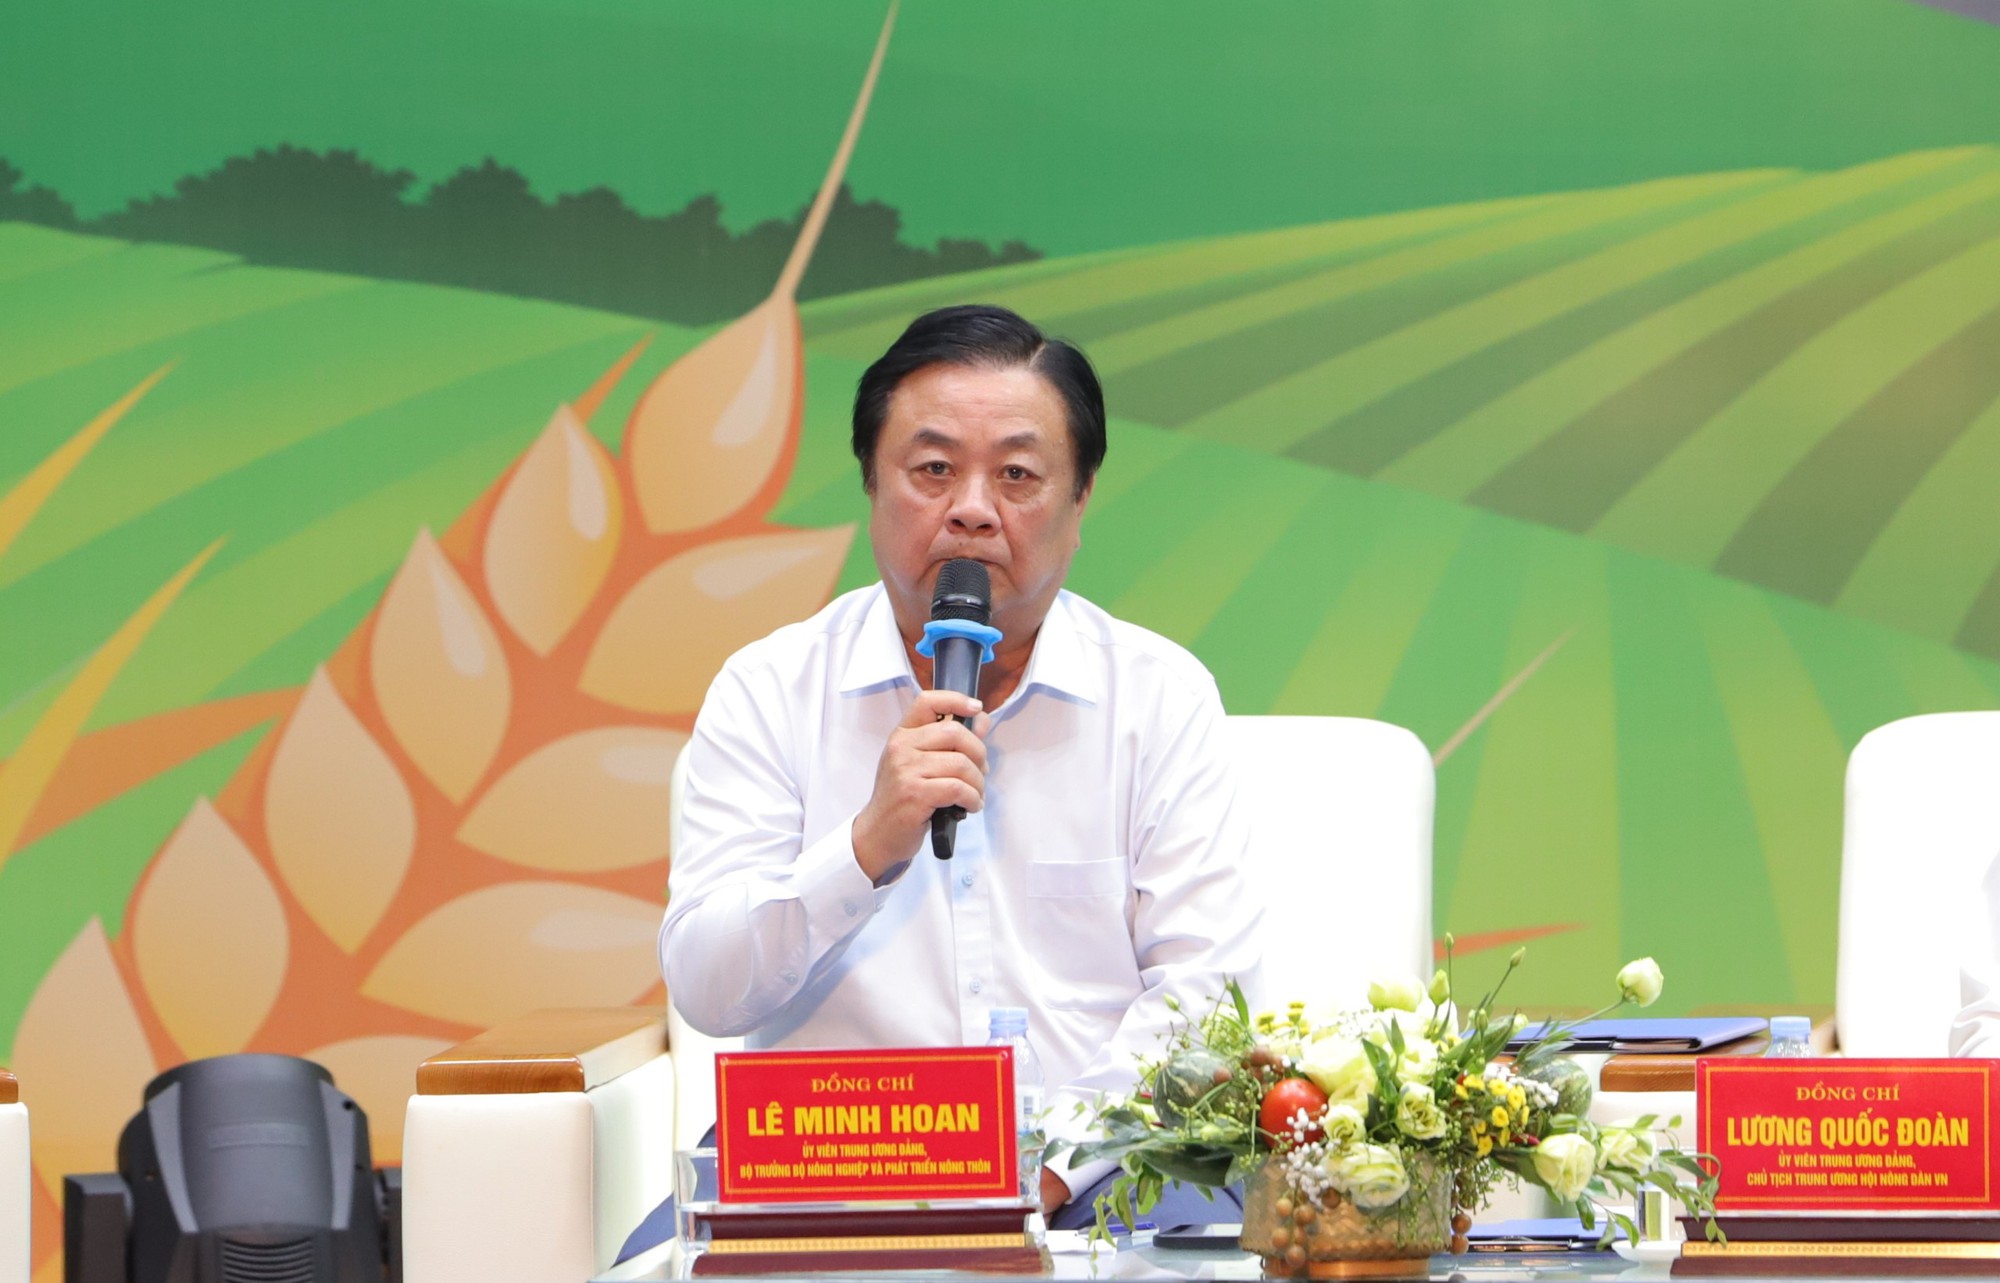 Bộ trưởng Lê Minh Hoan bày cách giúp nông dân giảm chi phí thức ăn chăn nuôi, phân bón... - Ảnh 4.